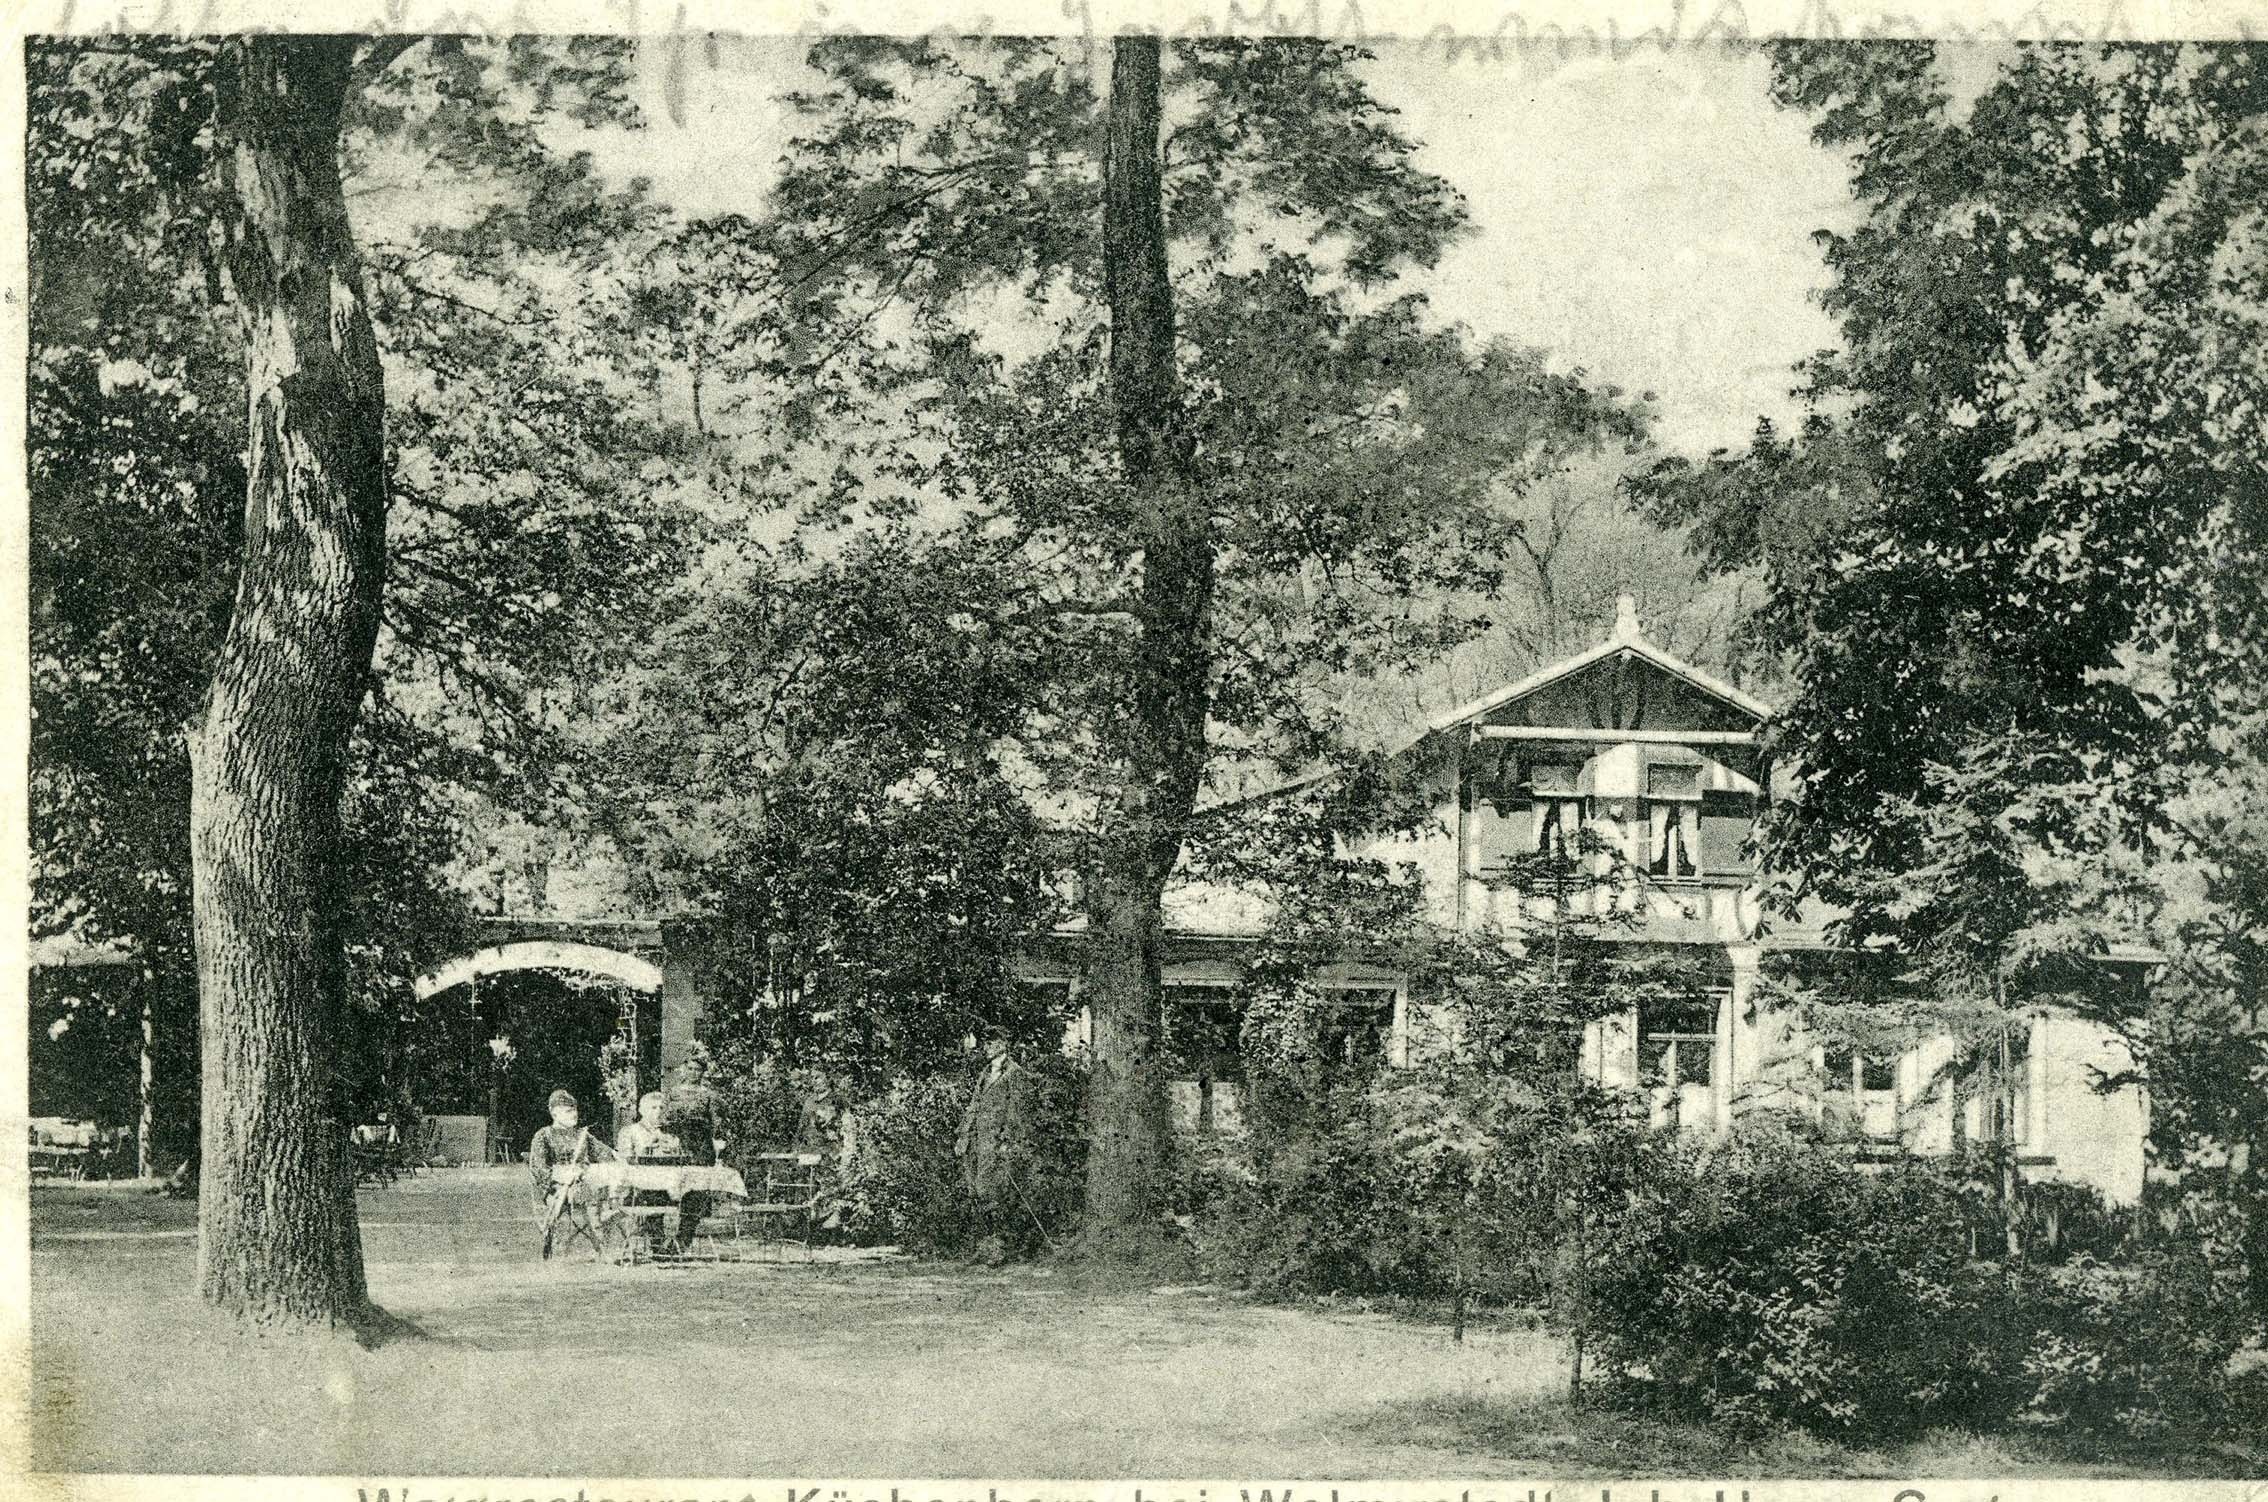 Postkarte, Waldrestaurant Küchenhorn bei Wolmirstedt, 1930 (Museum Wolmirstedt RR-F)